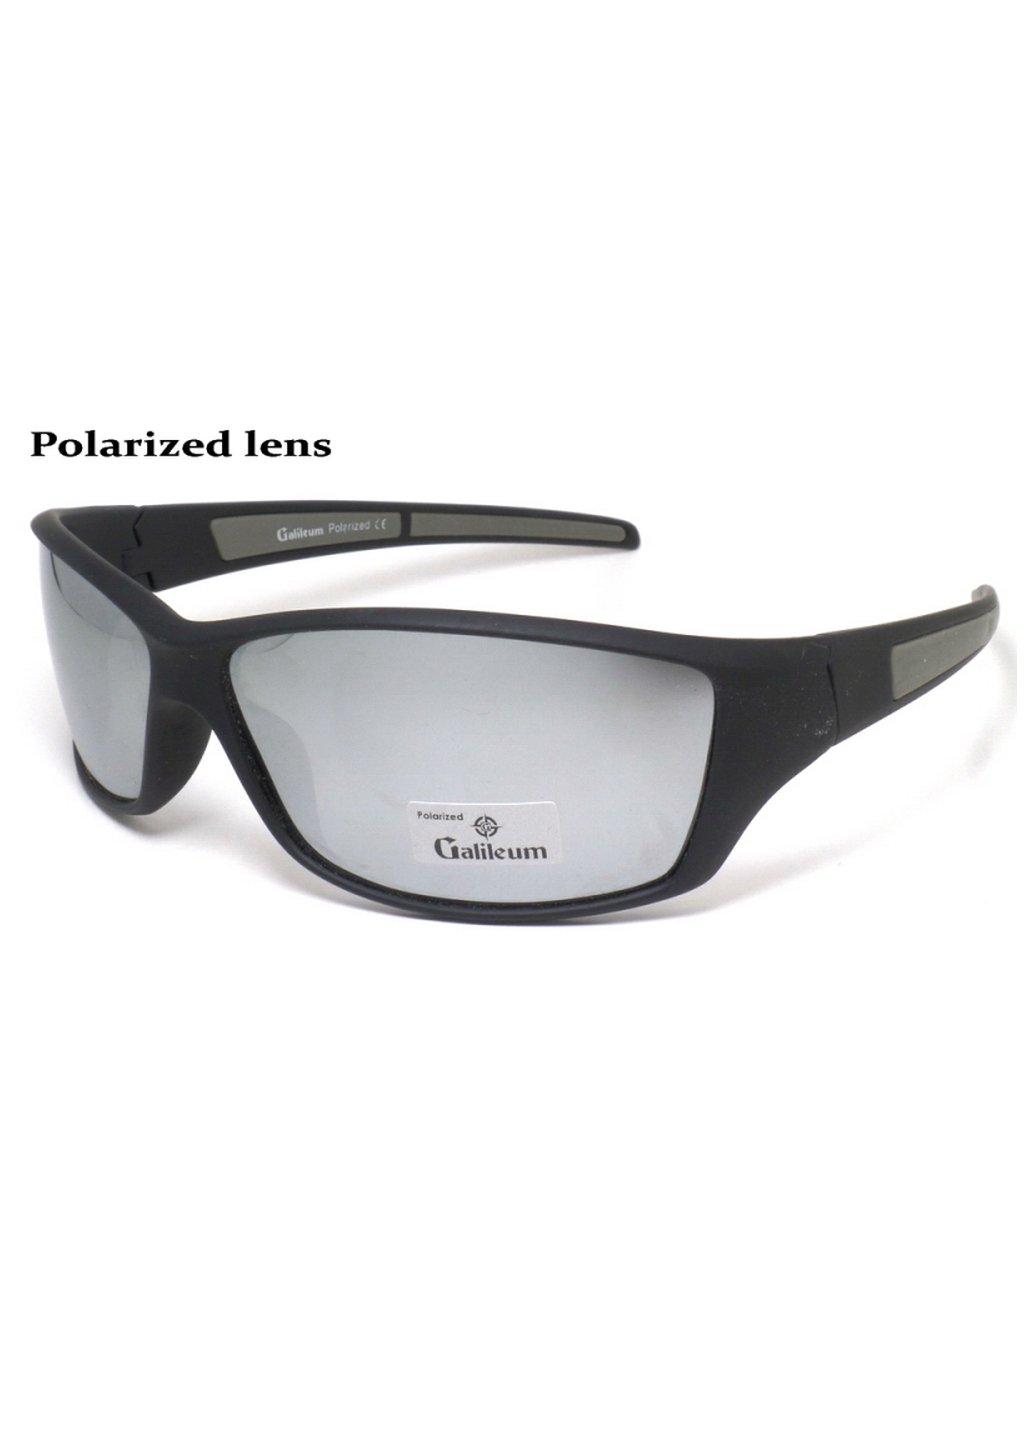 Купить Спортивные очки с поляризацией Galileum 125018 в интернет-магазине